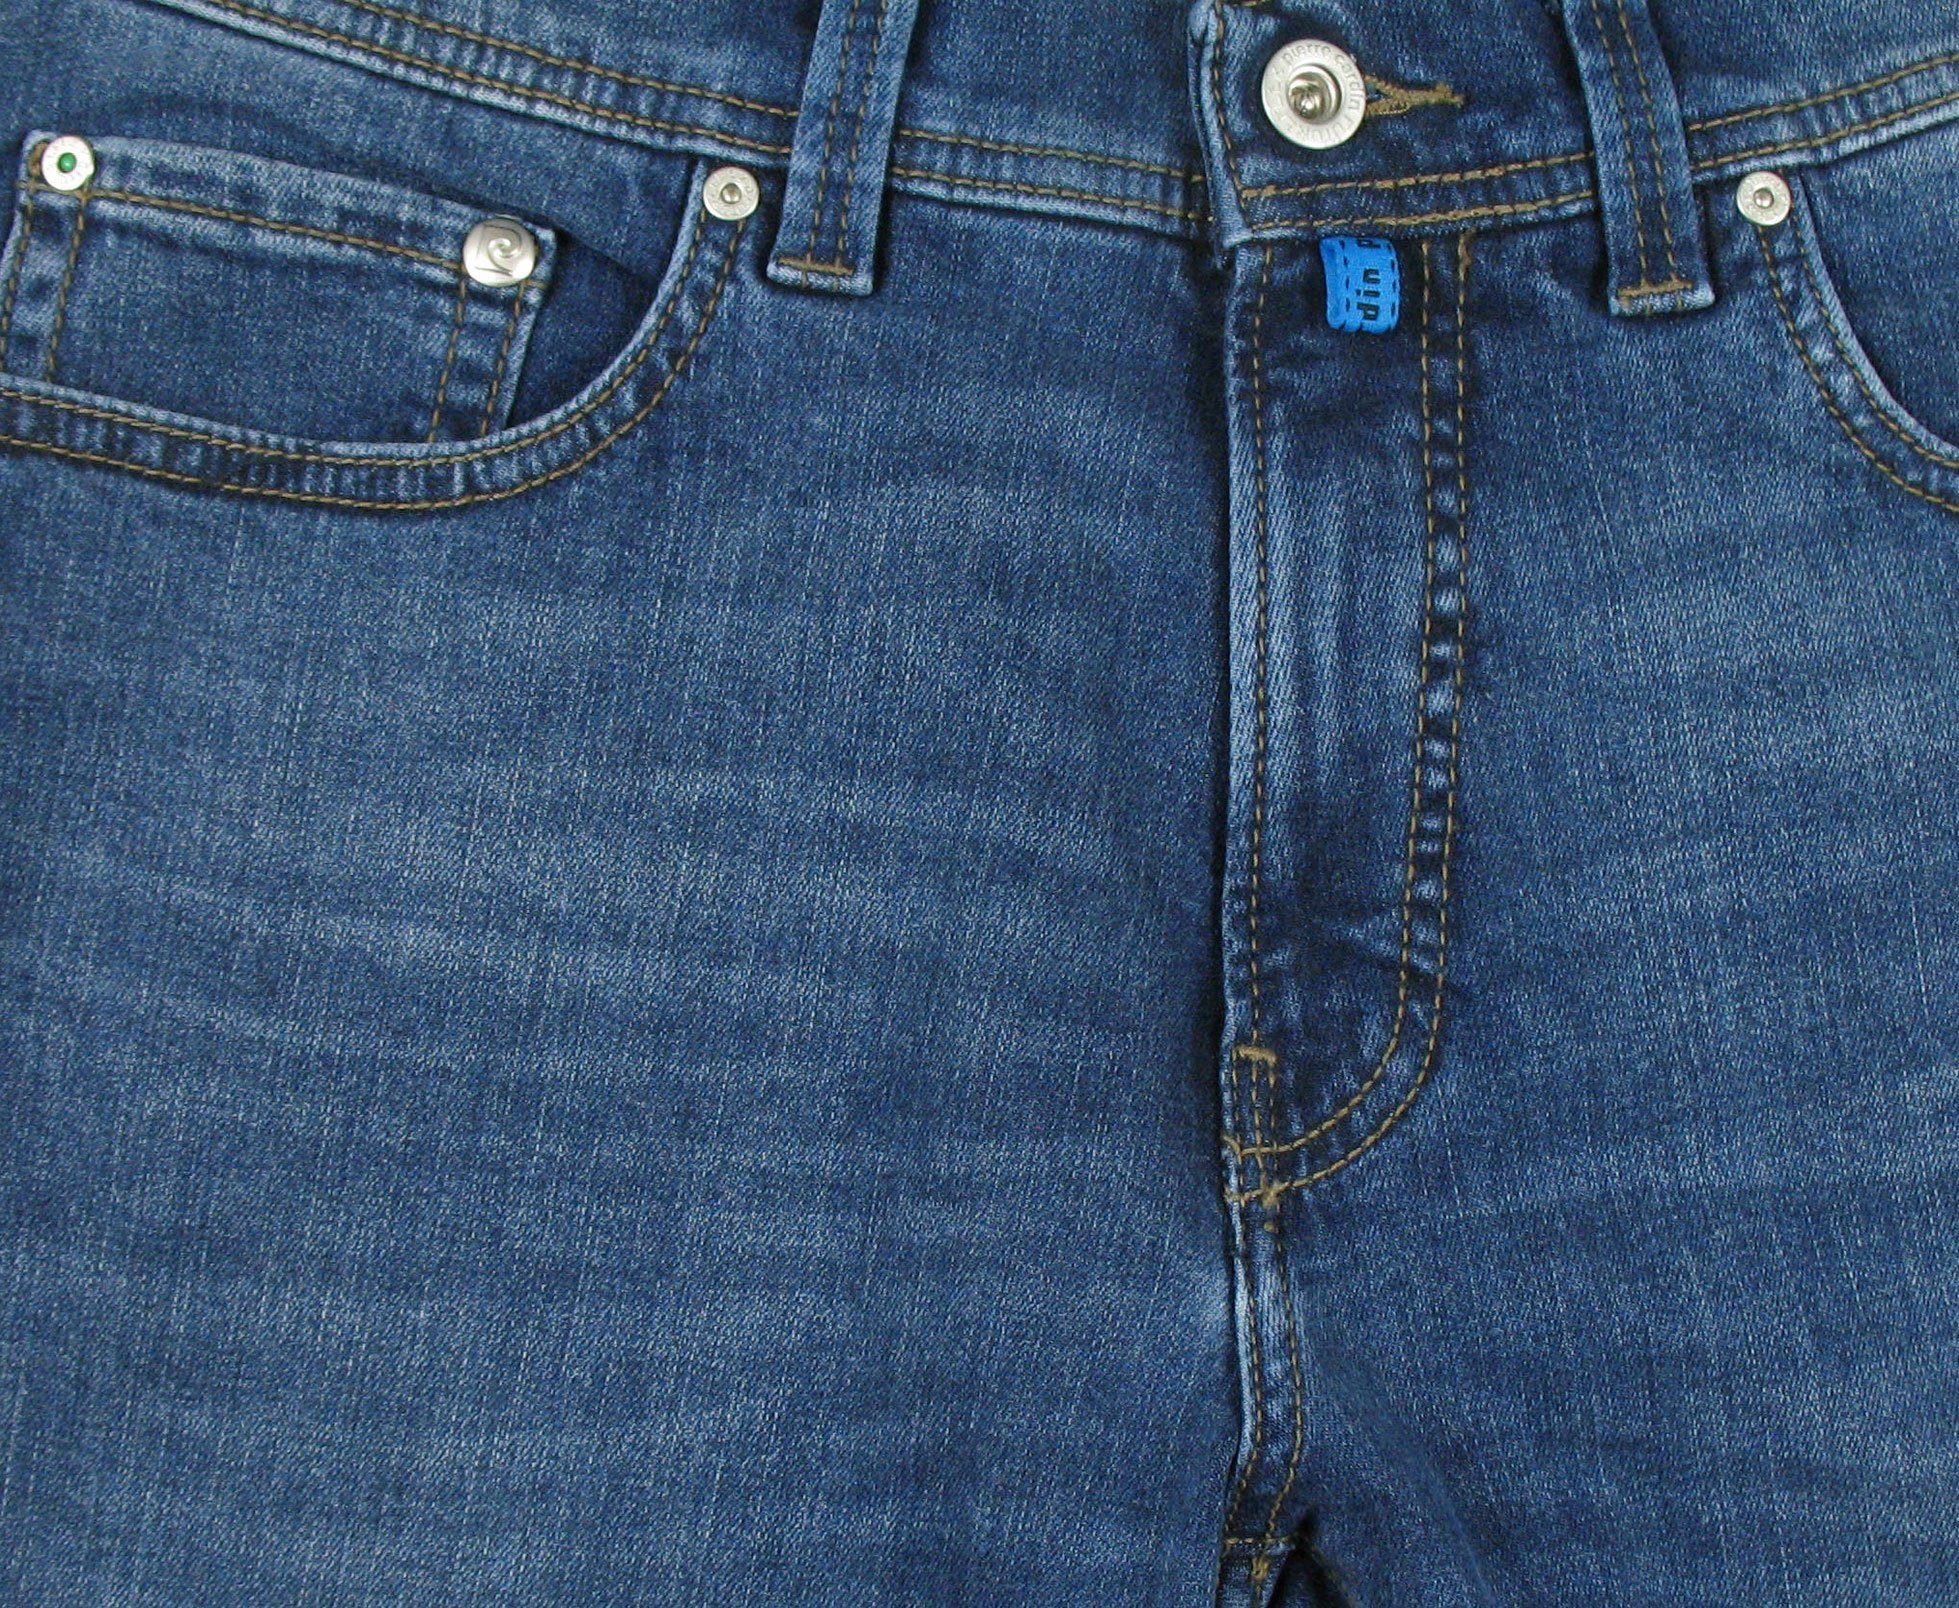 Futureflex 5-Pocket-Jeans Lyon Tapered used blue Pierre ocean Cardin buffies